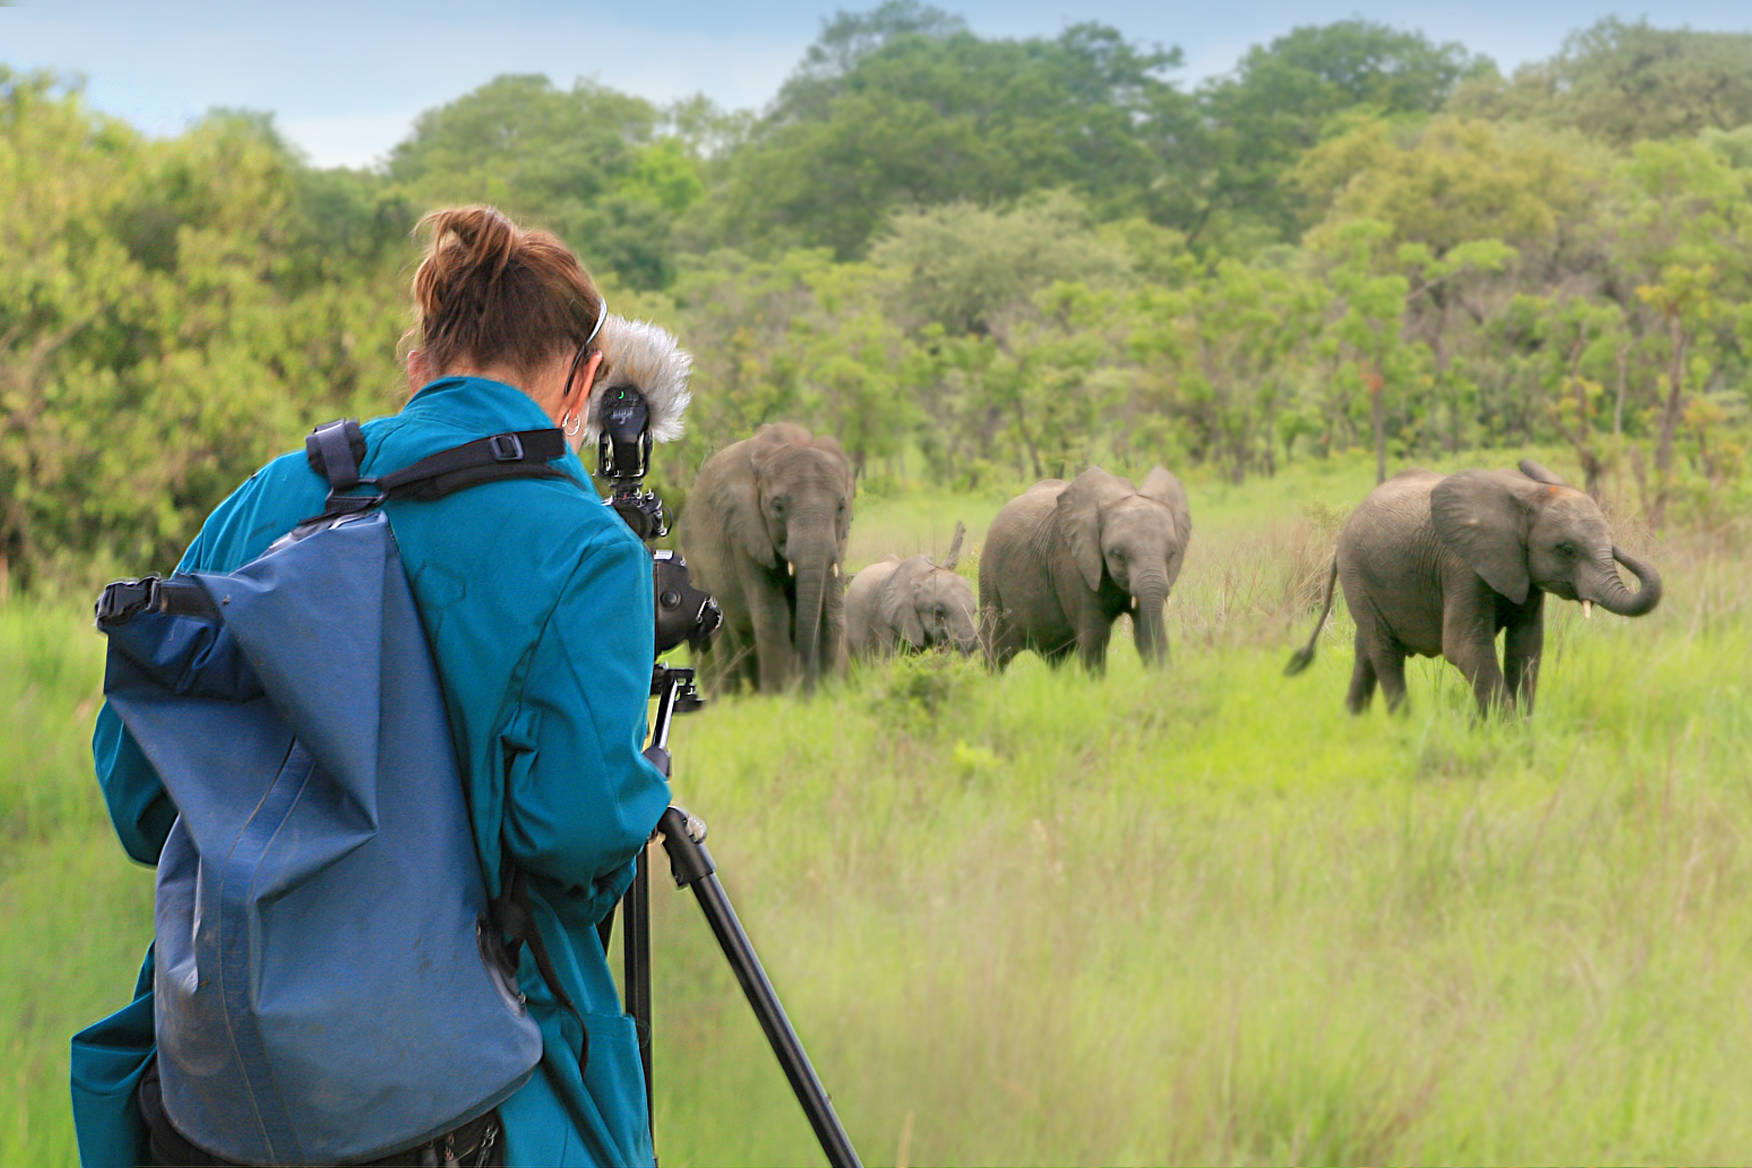 Kelly Bakos filming the orphaned elephants. Photo courtesy of Kelly Bakos.